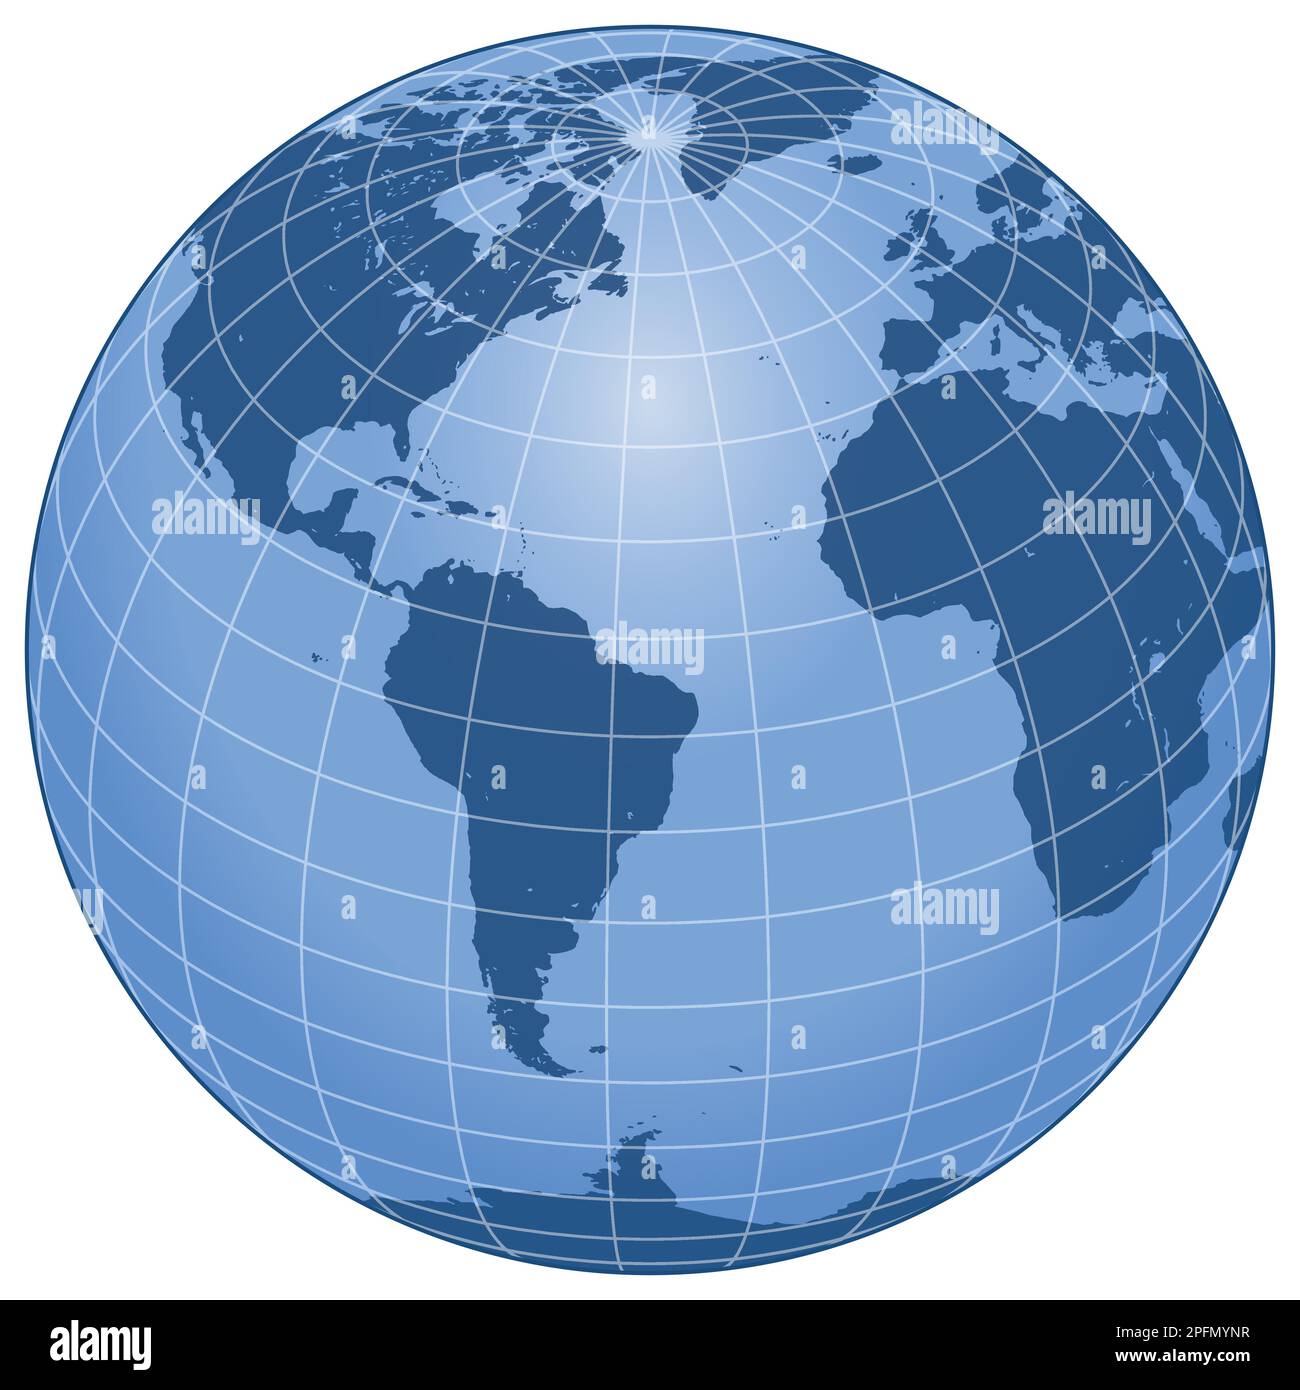 Vektordesign des Planeten Erde, Entwurf der terrestrischen Kugel Stock Vektor